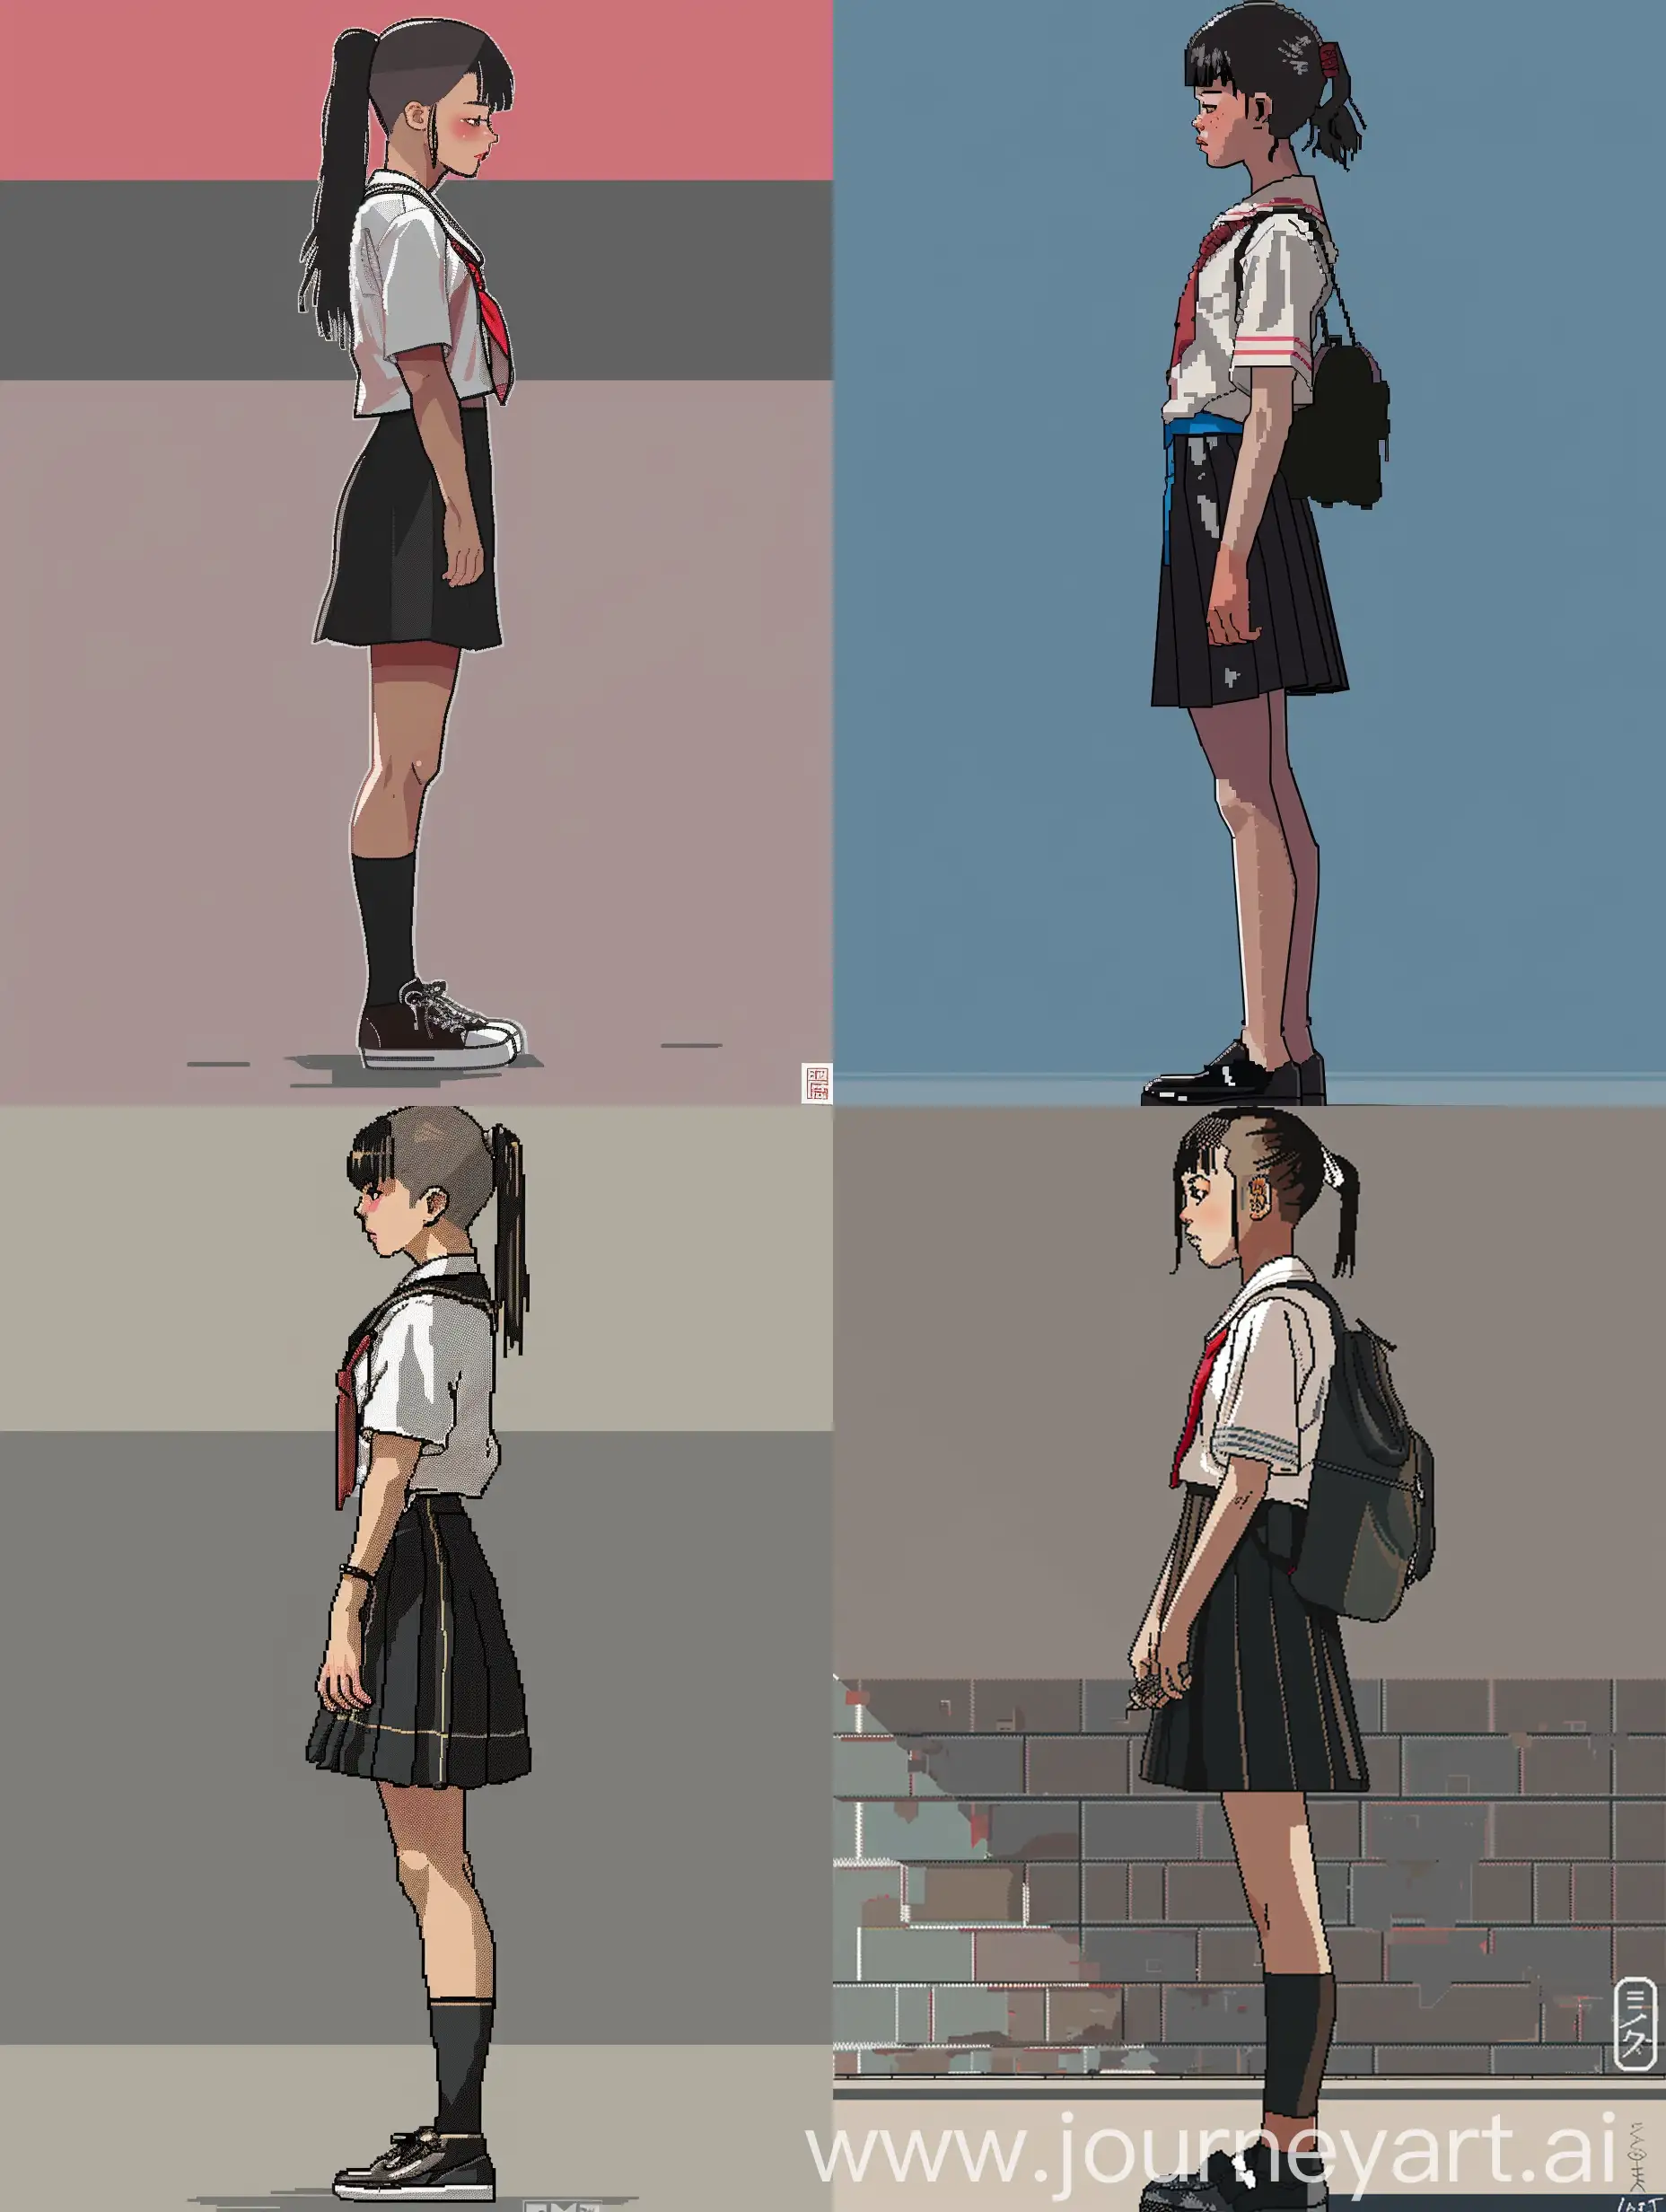 Japanese-Schoolgirl-Pixel-Art-in-Side-View-Full-Length-Concept-Art